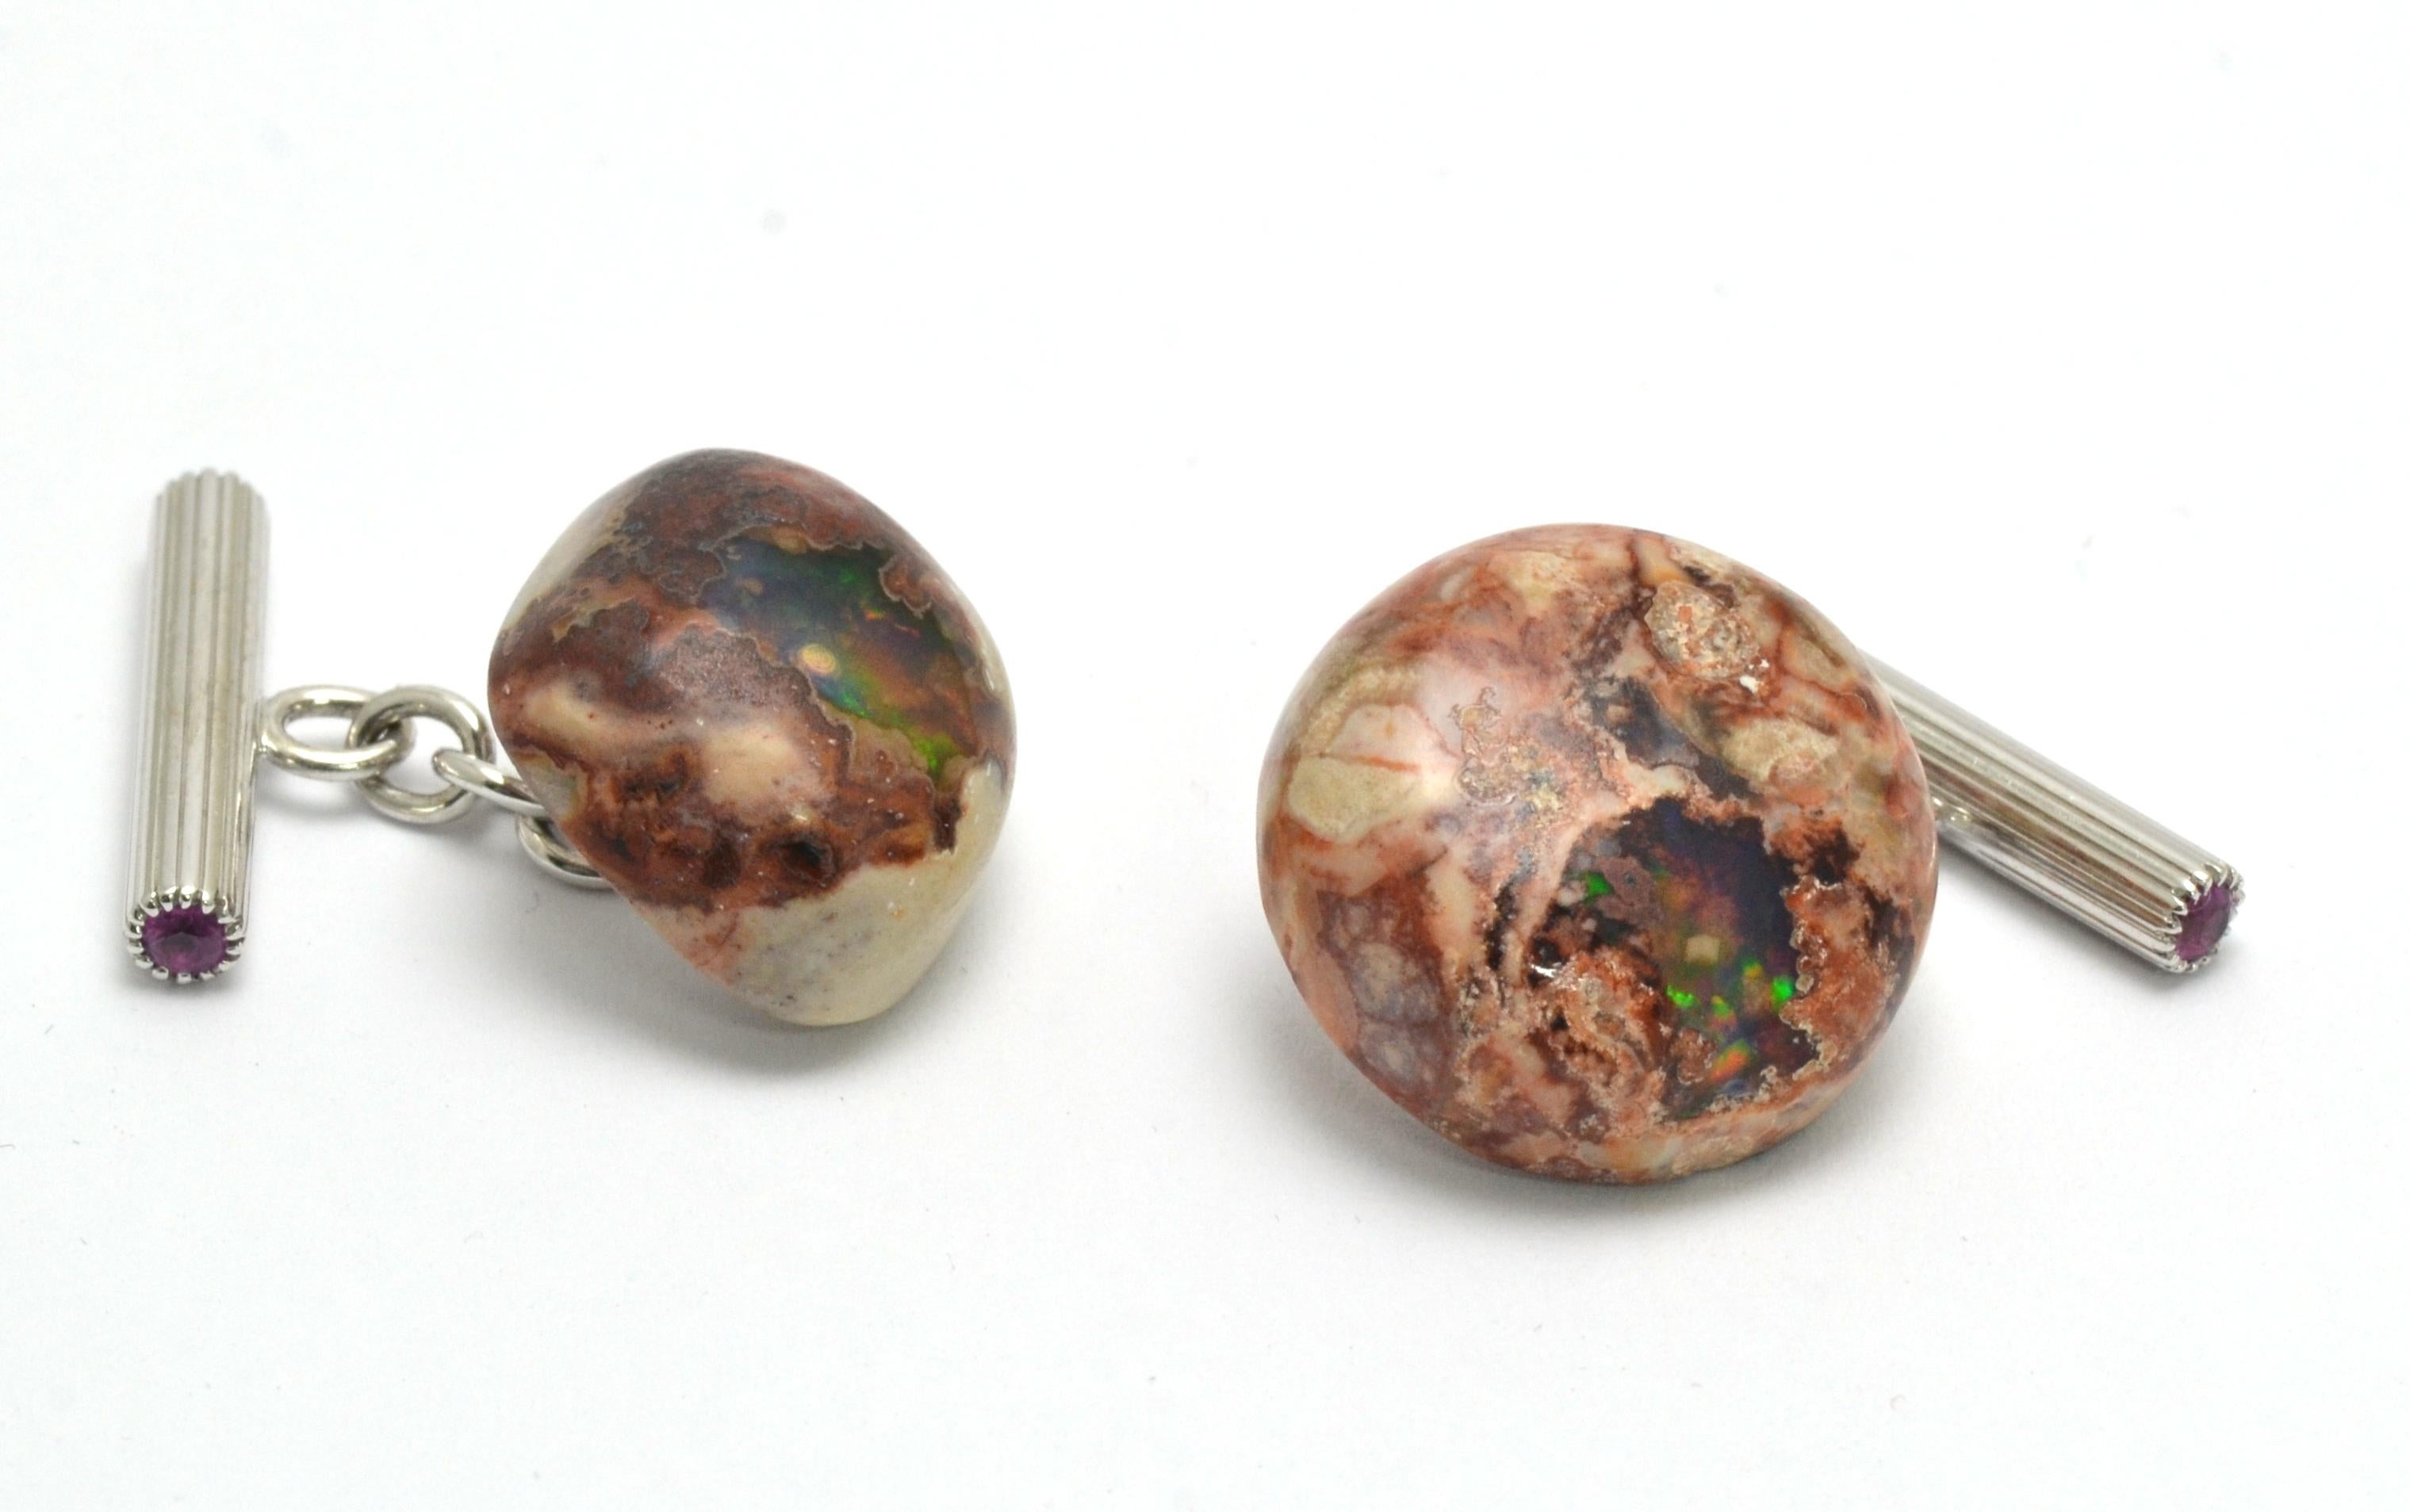 Fait à la main à Margherita Burgener  atelier familial,  basés à Valenza, en Italie, ces boutons de manchette présentent deux caractéristiques intéressantes.  Opales uniques de Boulder  dans leur forme et leur taille naturelles.  Les opales